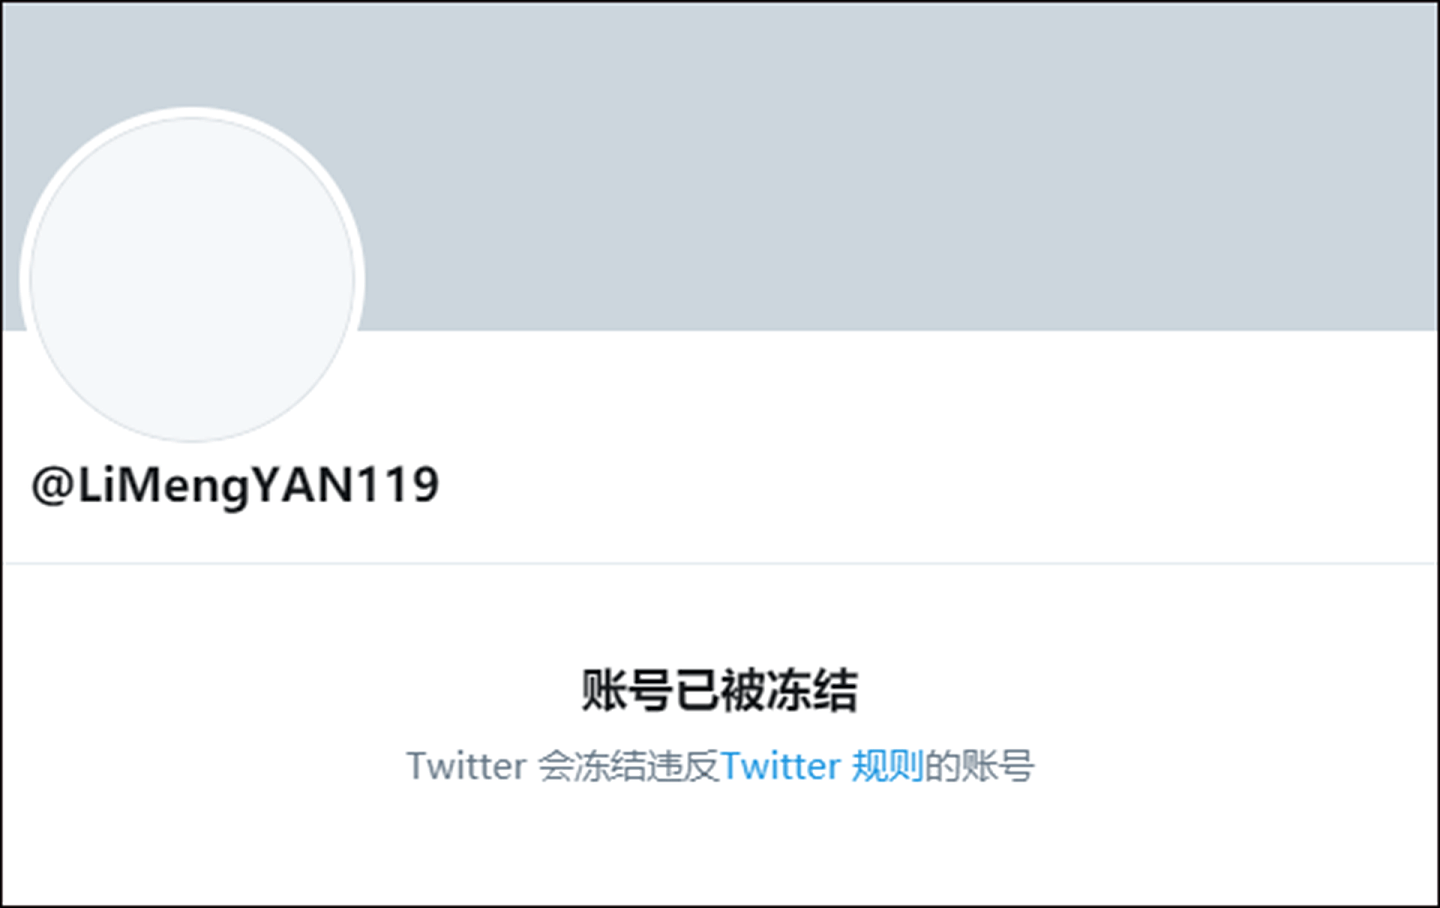 闫丽梦的推特账号被封。（Twitter@LiMengYAN119）